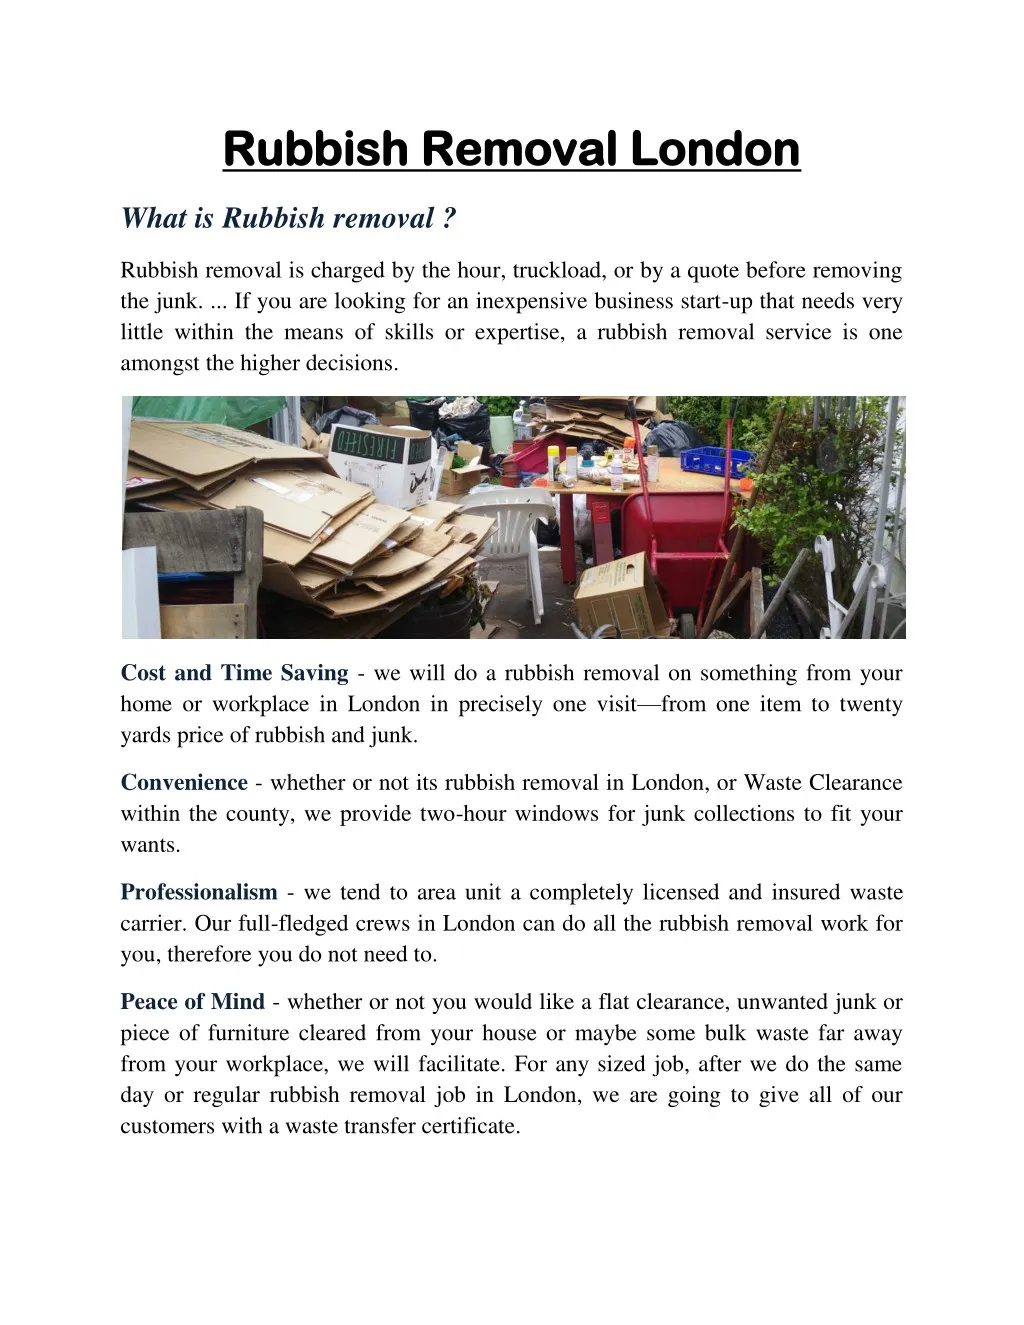 rubbish removal london rubbish removal london